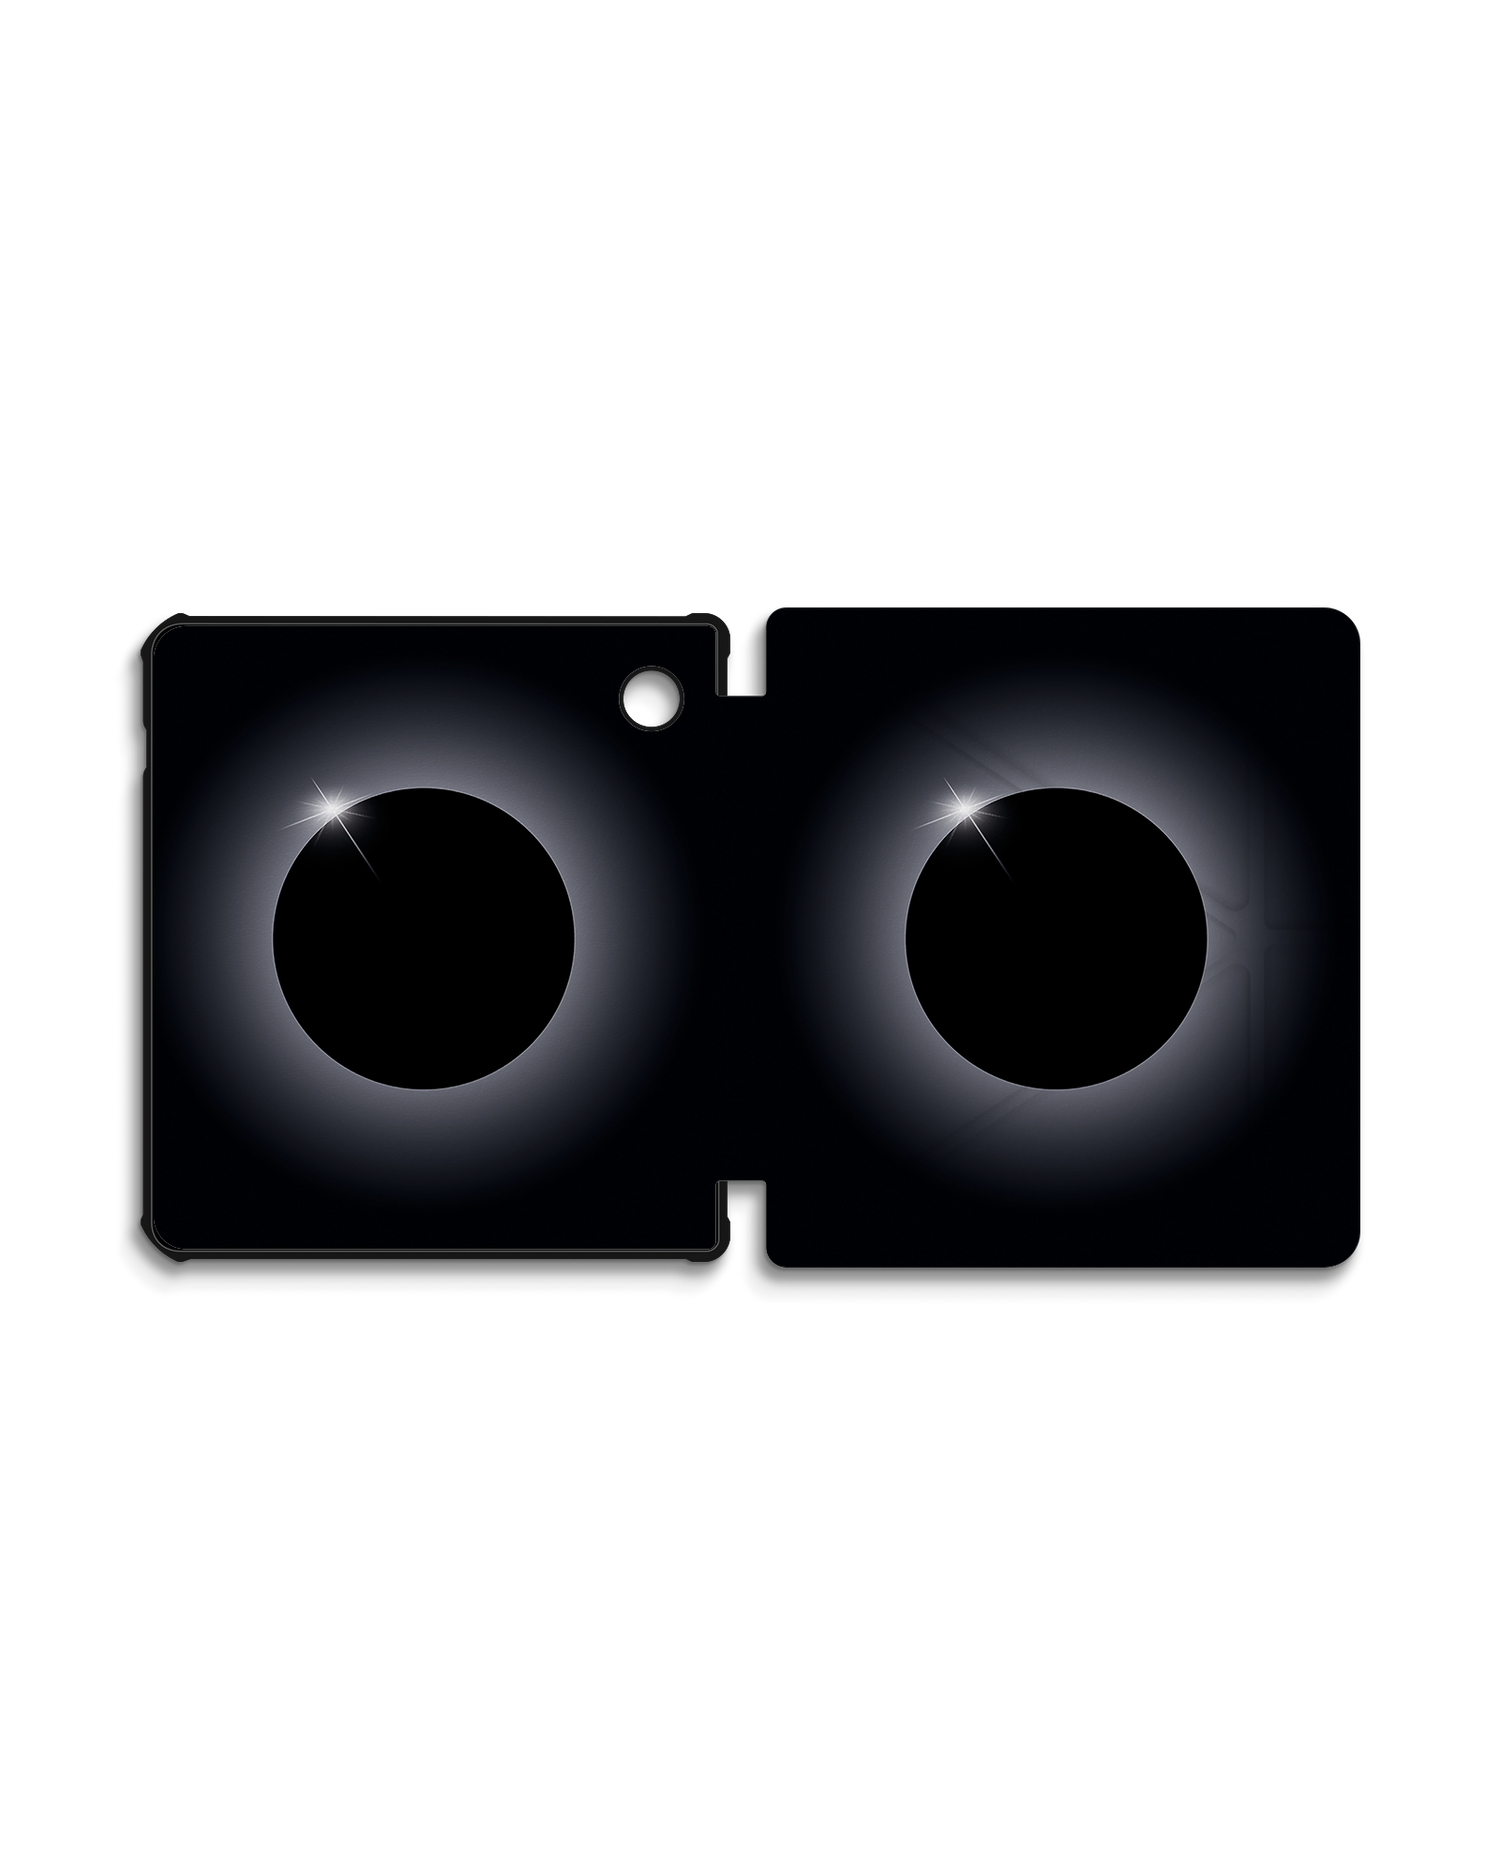 Eclipse eBook-Reader Smart Case für tolino vision 5 (2019): Geöffnet Außenansicht